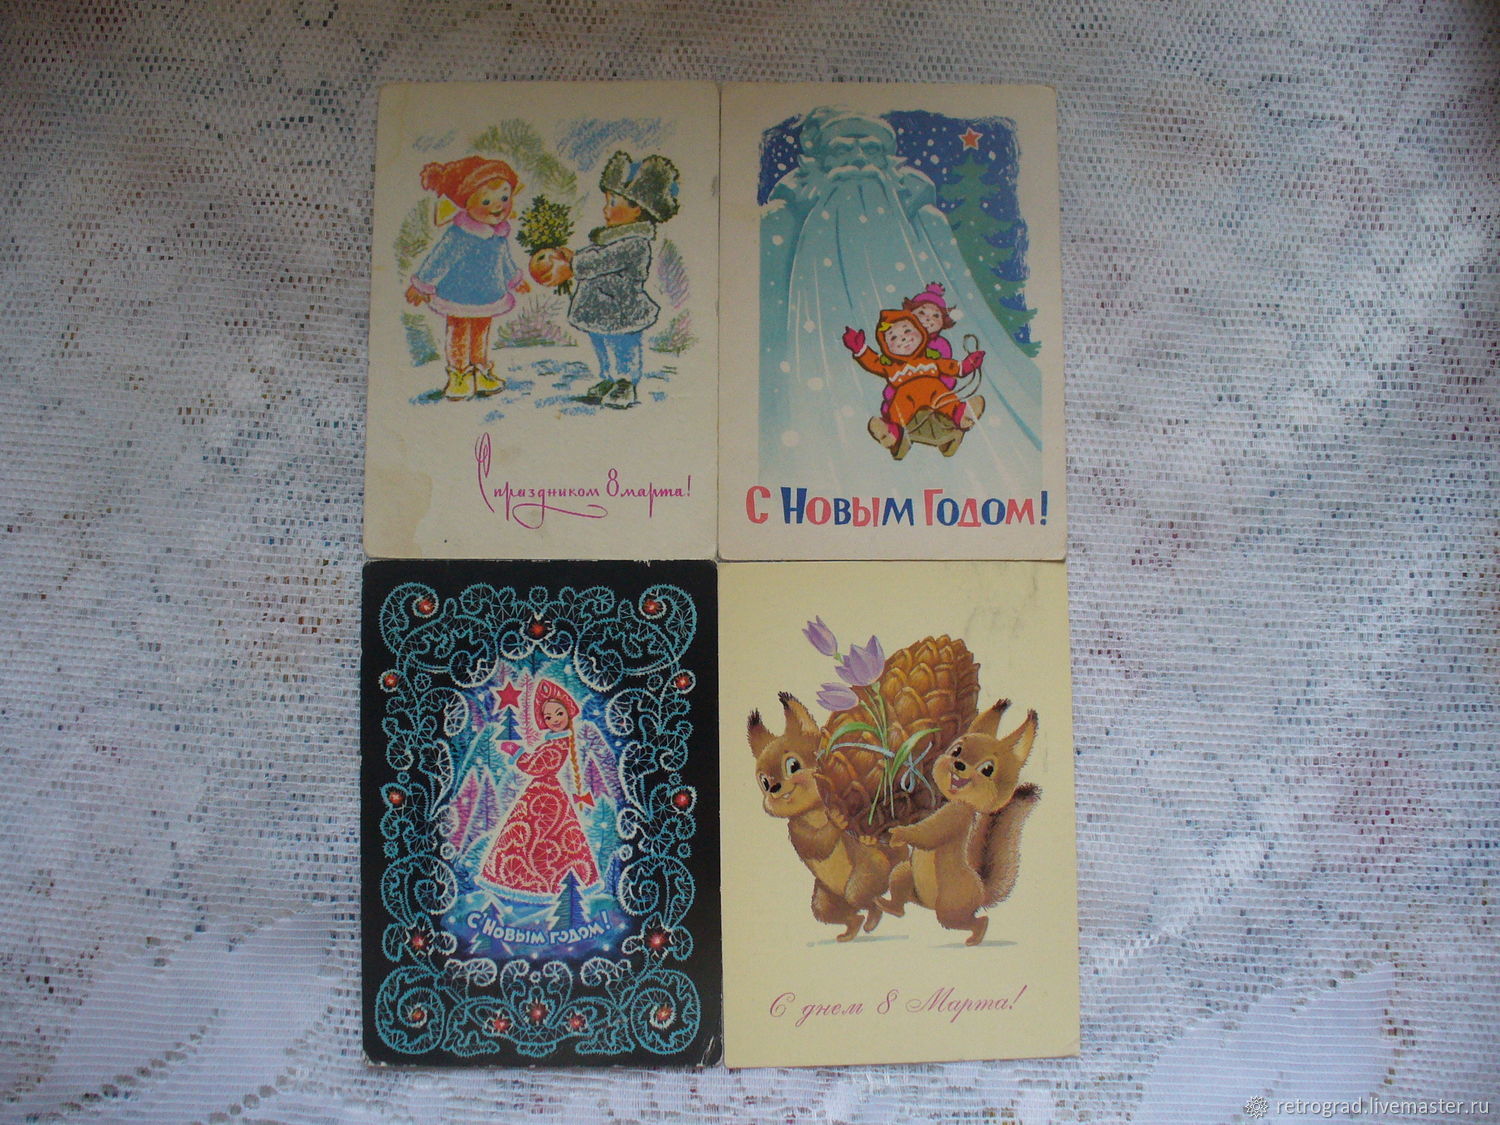 Vintage Cards